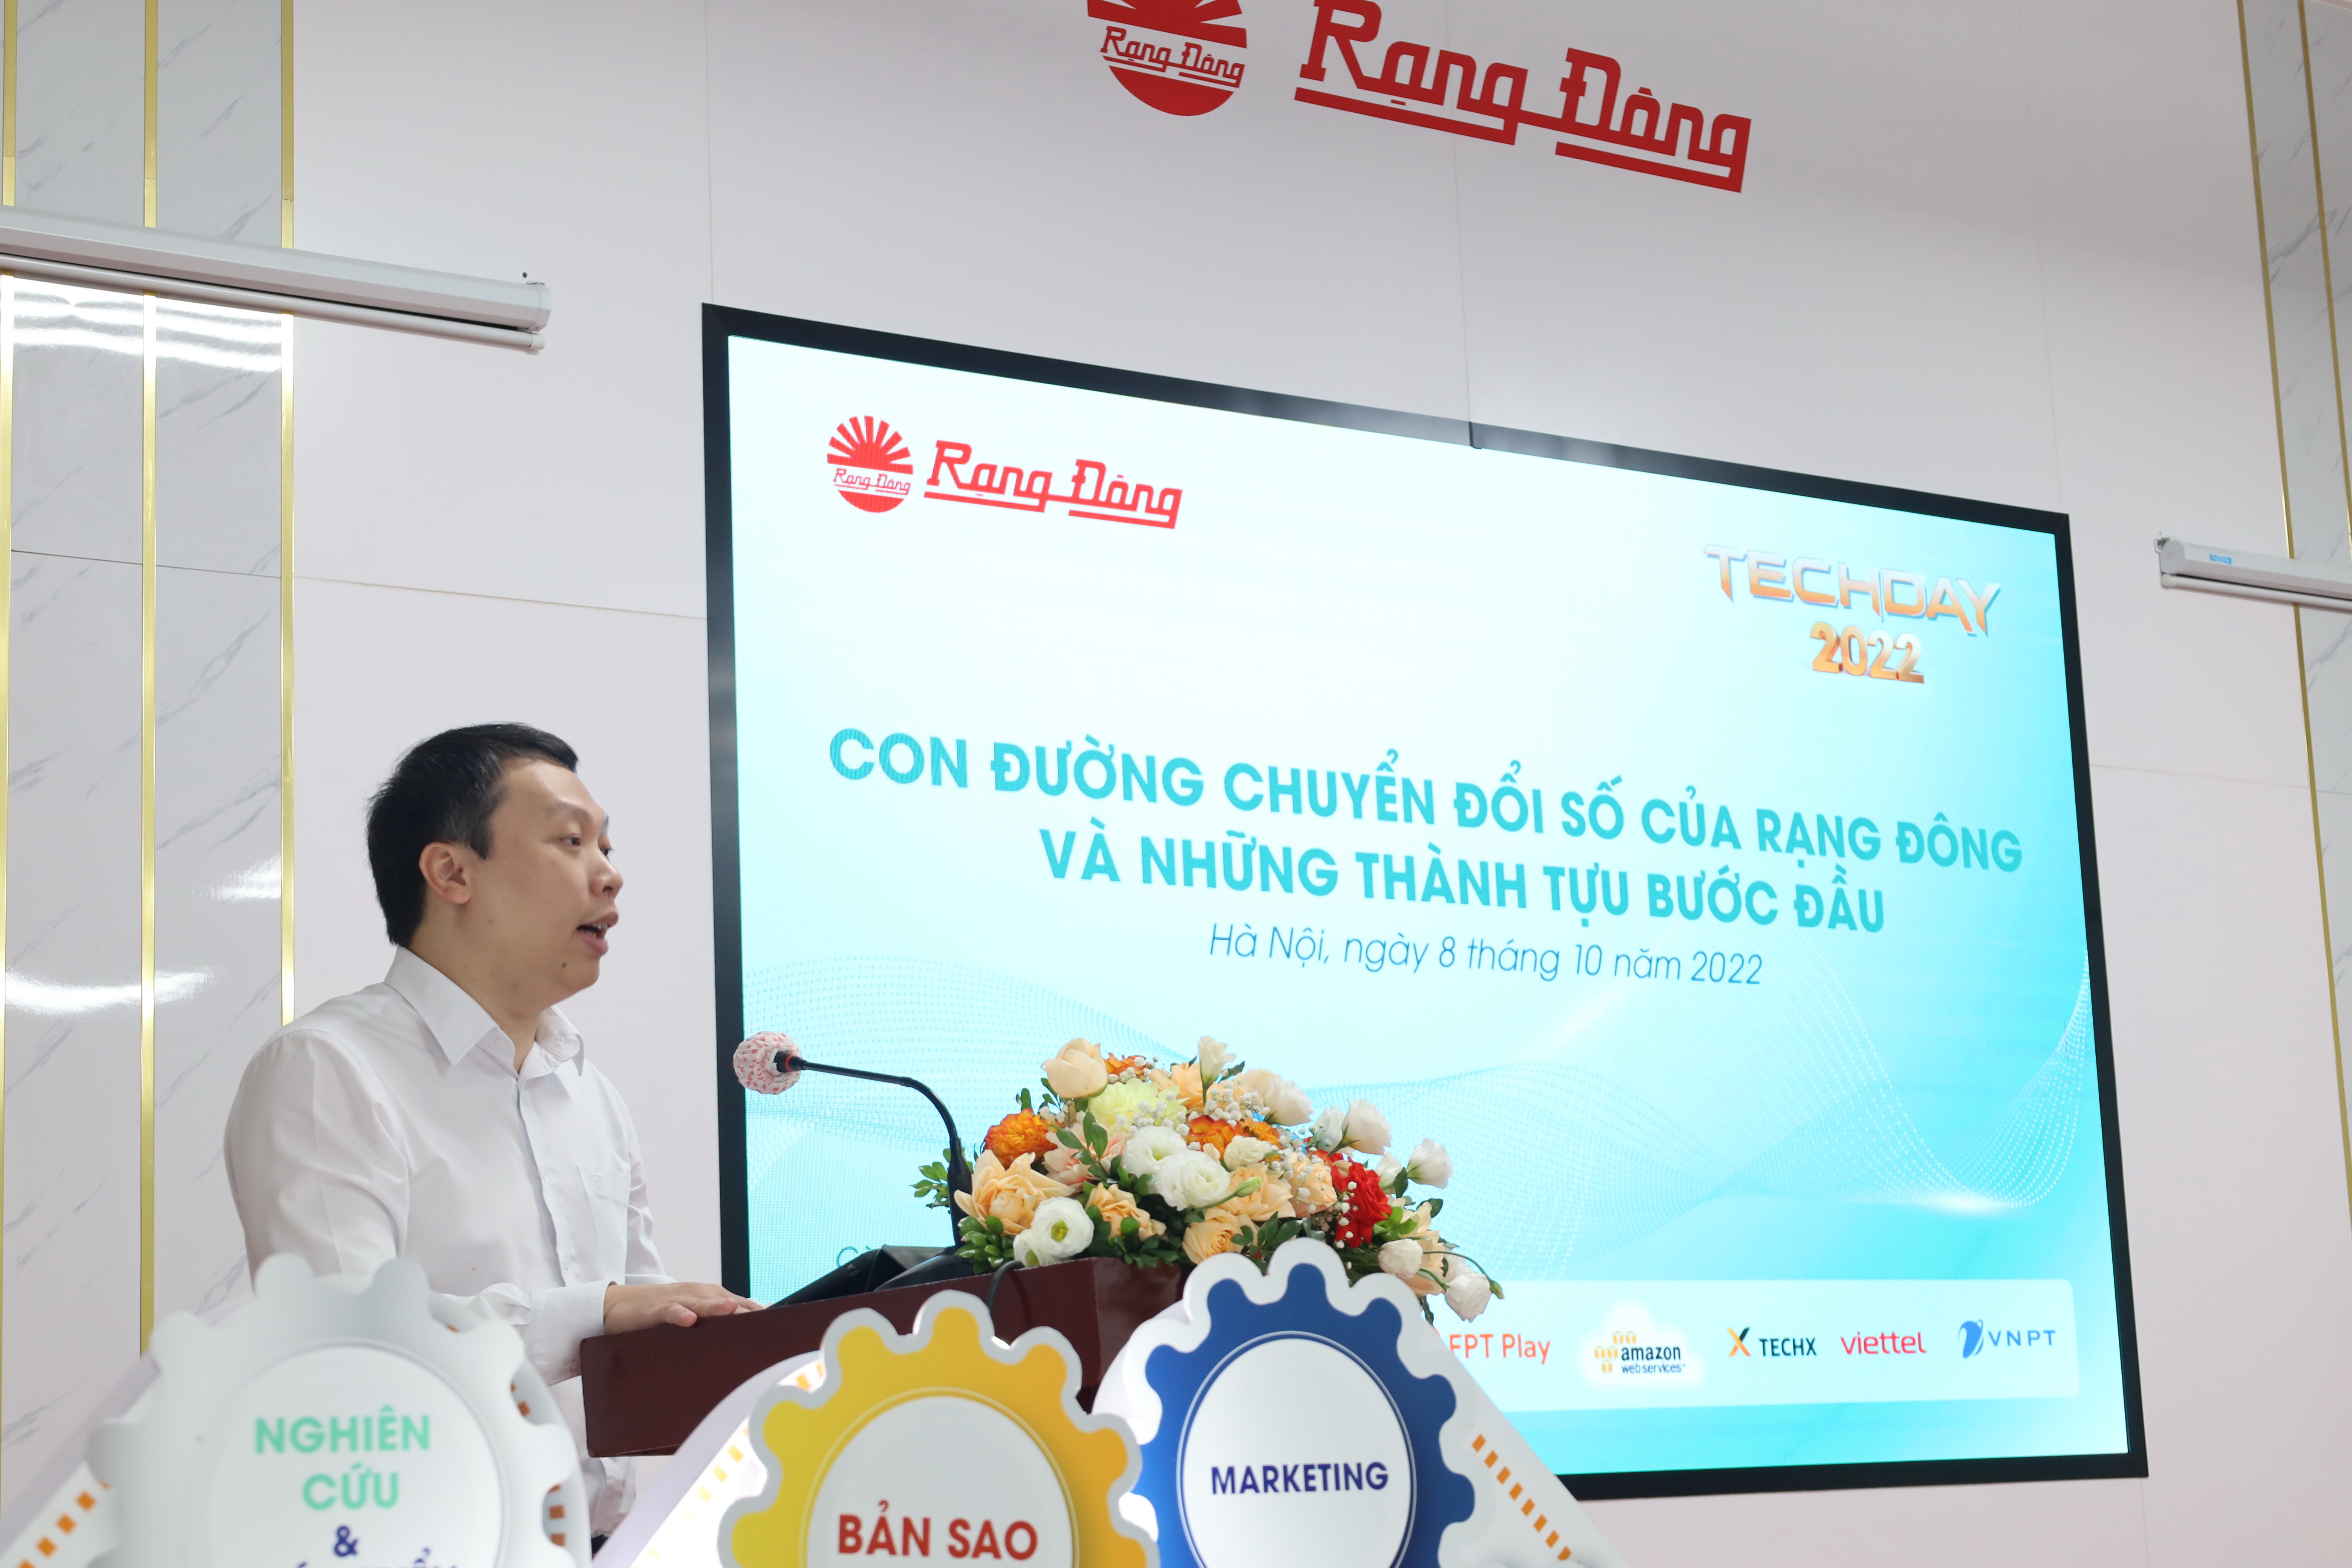 [TOÀN VĂN] Bài phát biểu của Thứ trưởng Nguyễn Huy Dũng tại Hội thảo Con đường chuyển đổi số Rạng Đông và những thành tựu bước đầu